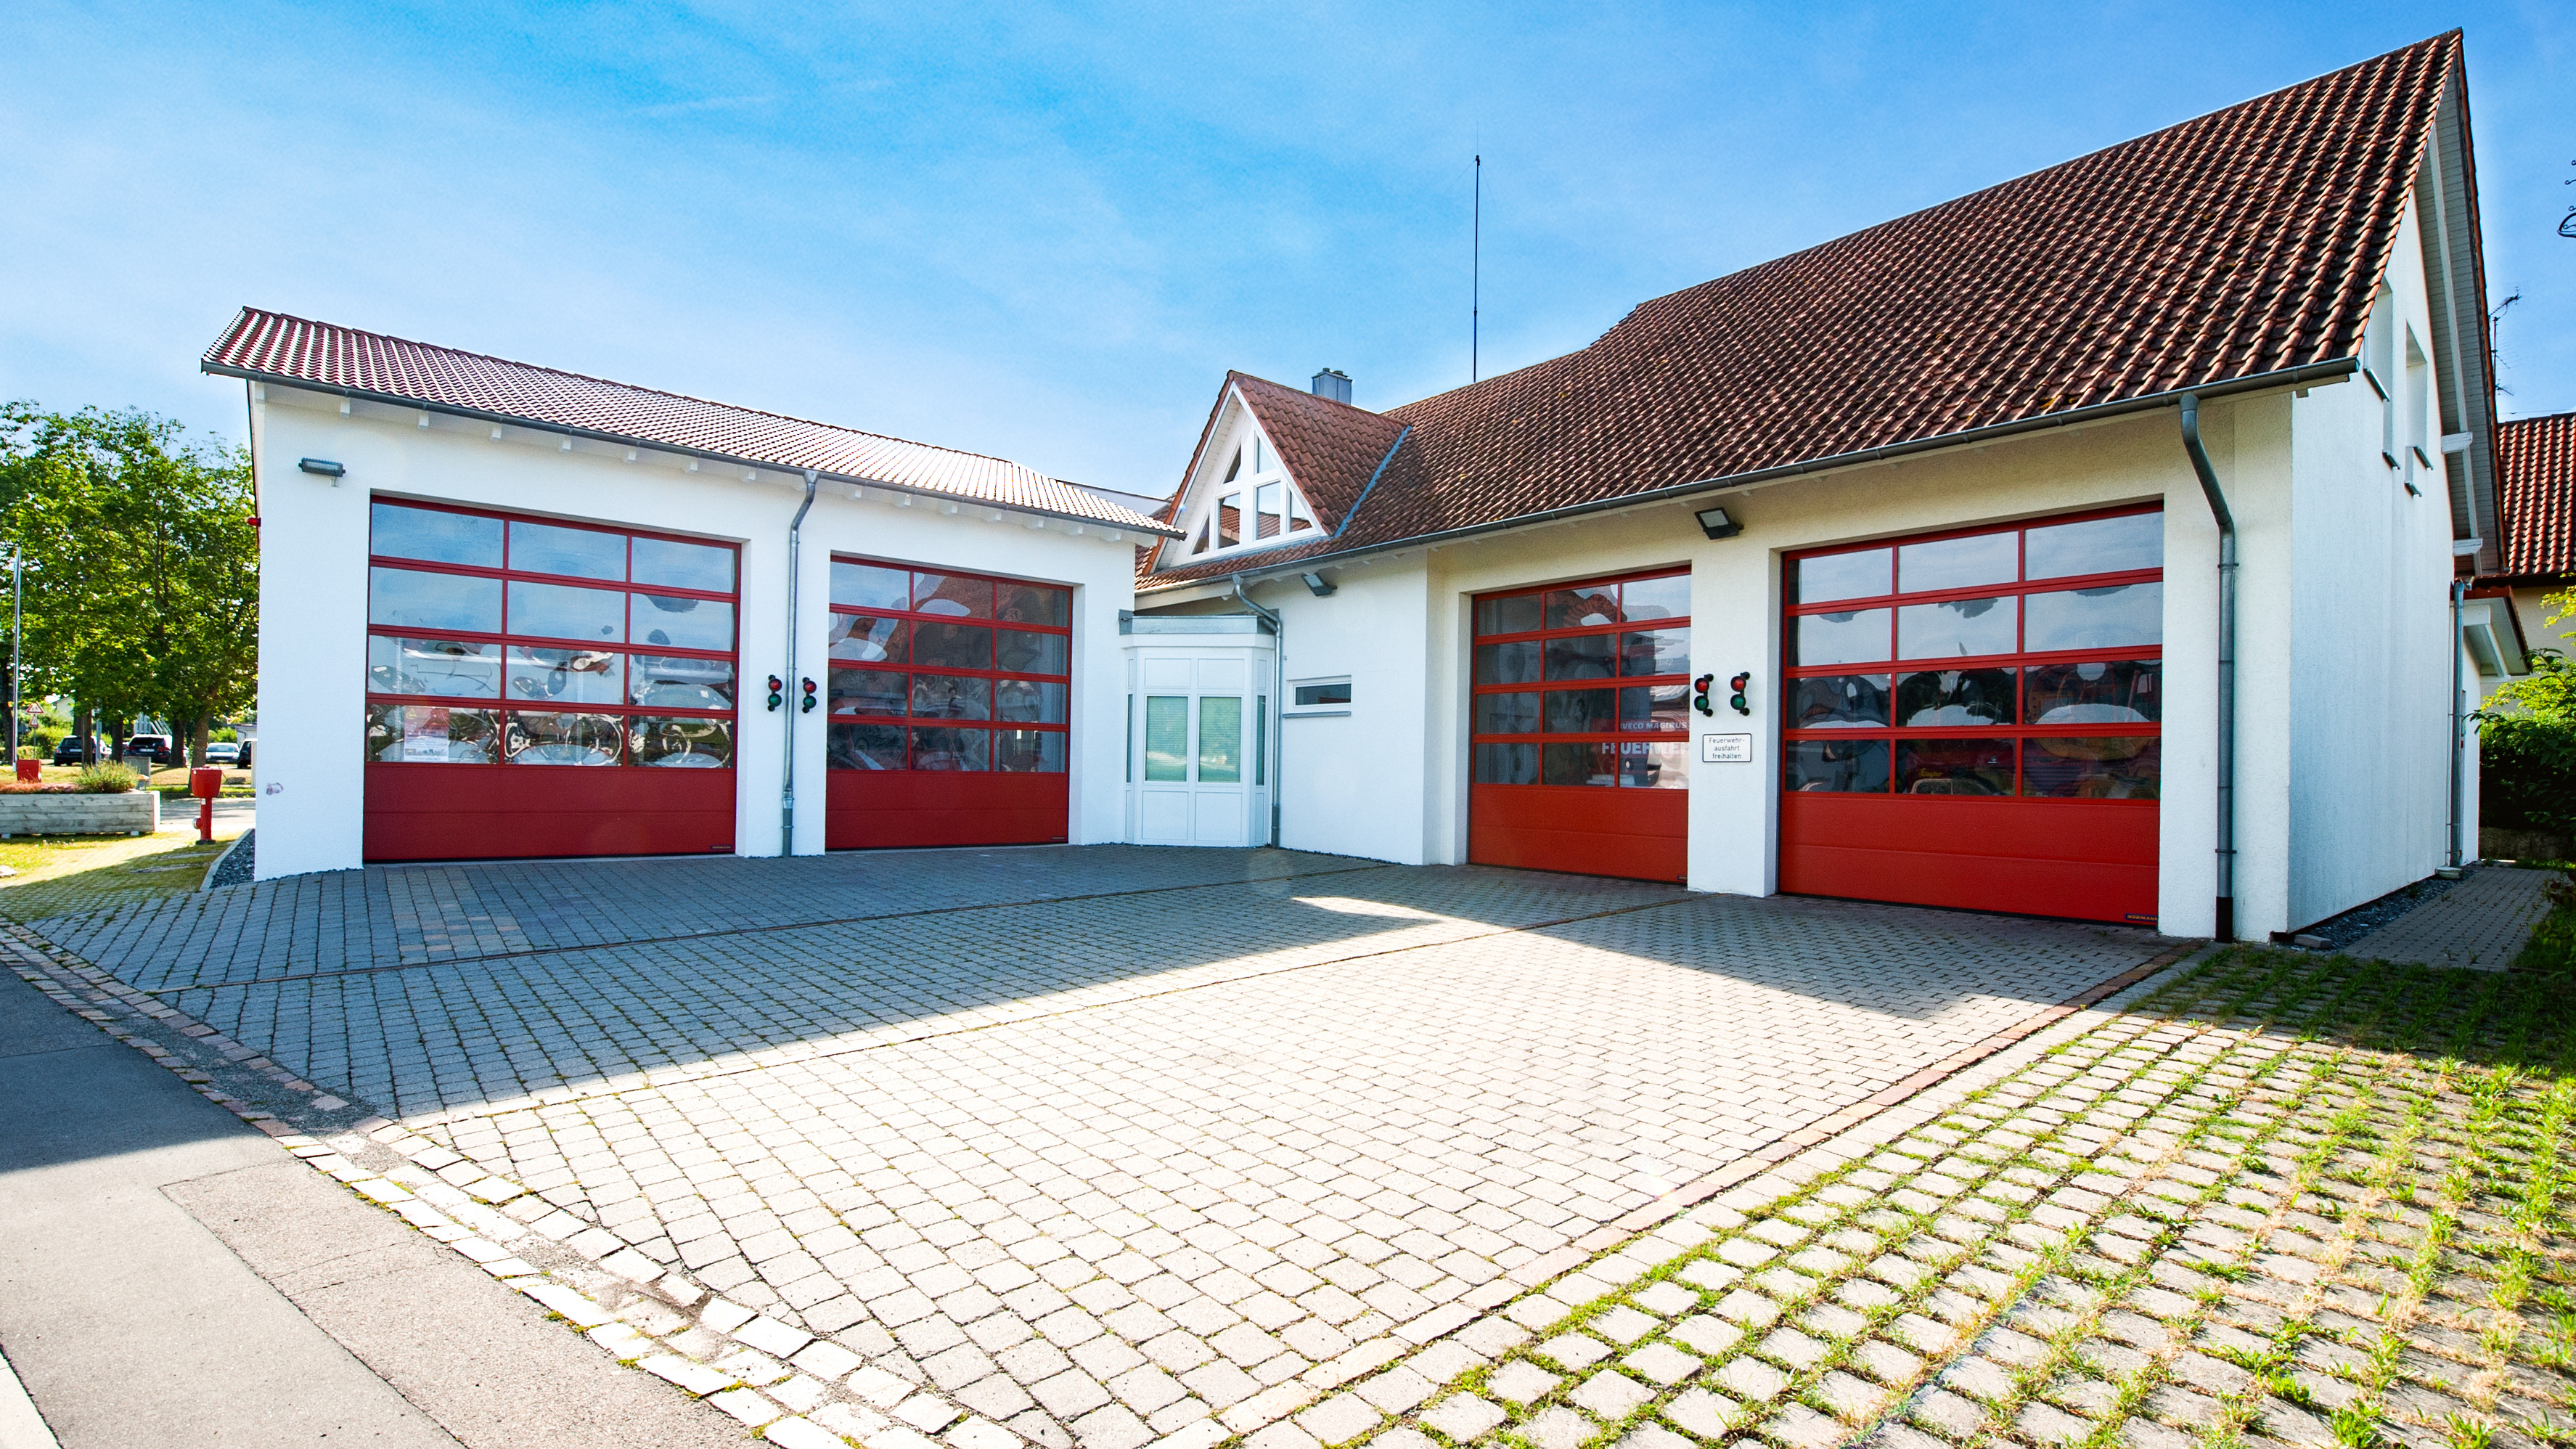 Feuerwehrhaus Langenenslingen